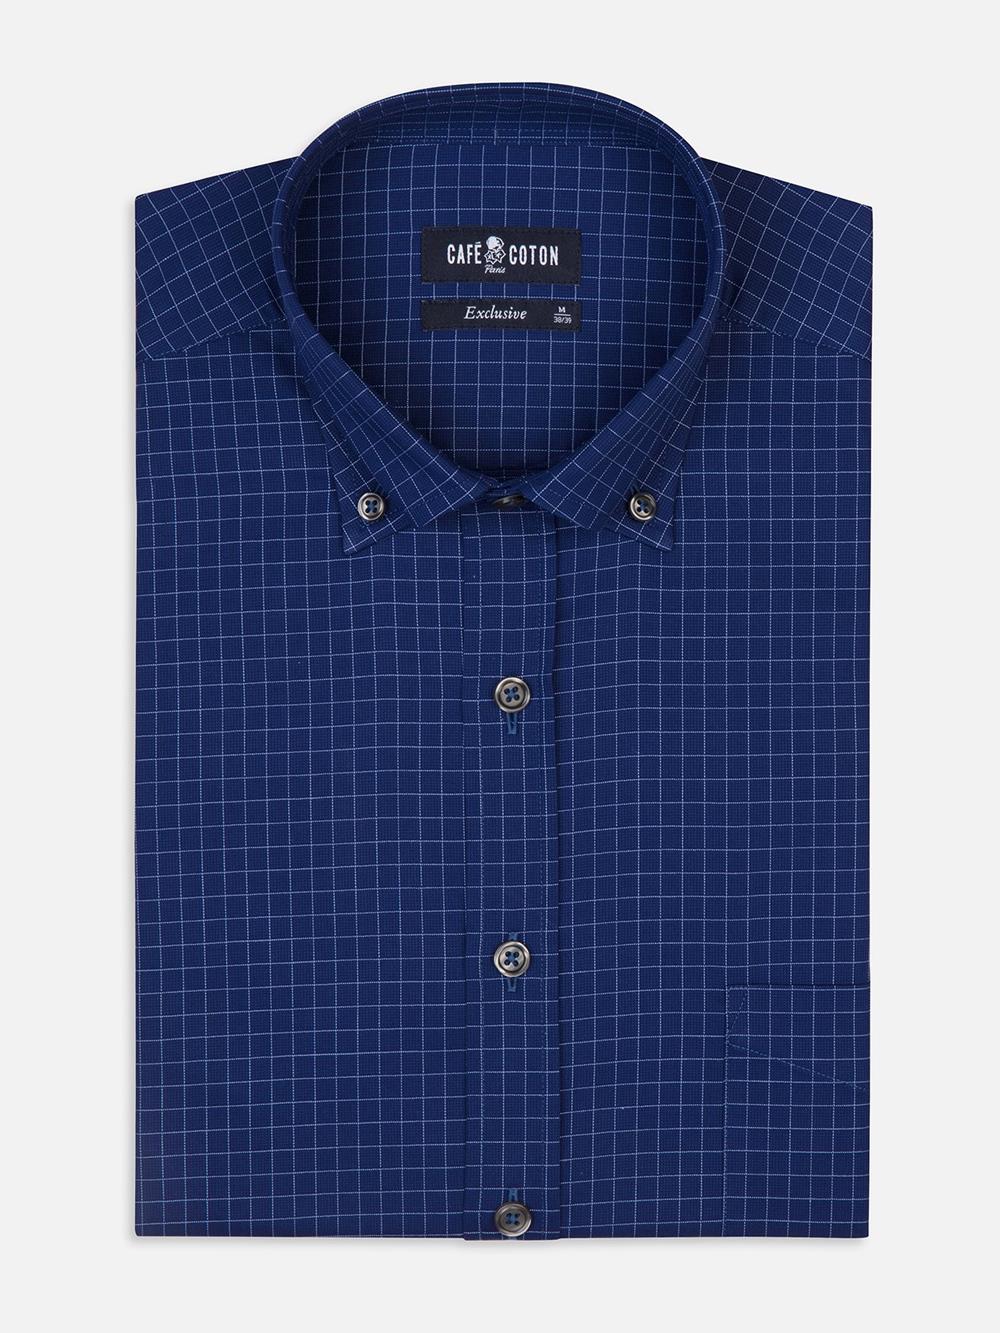 Clyde navy blue checked shirt - Button-down collar